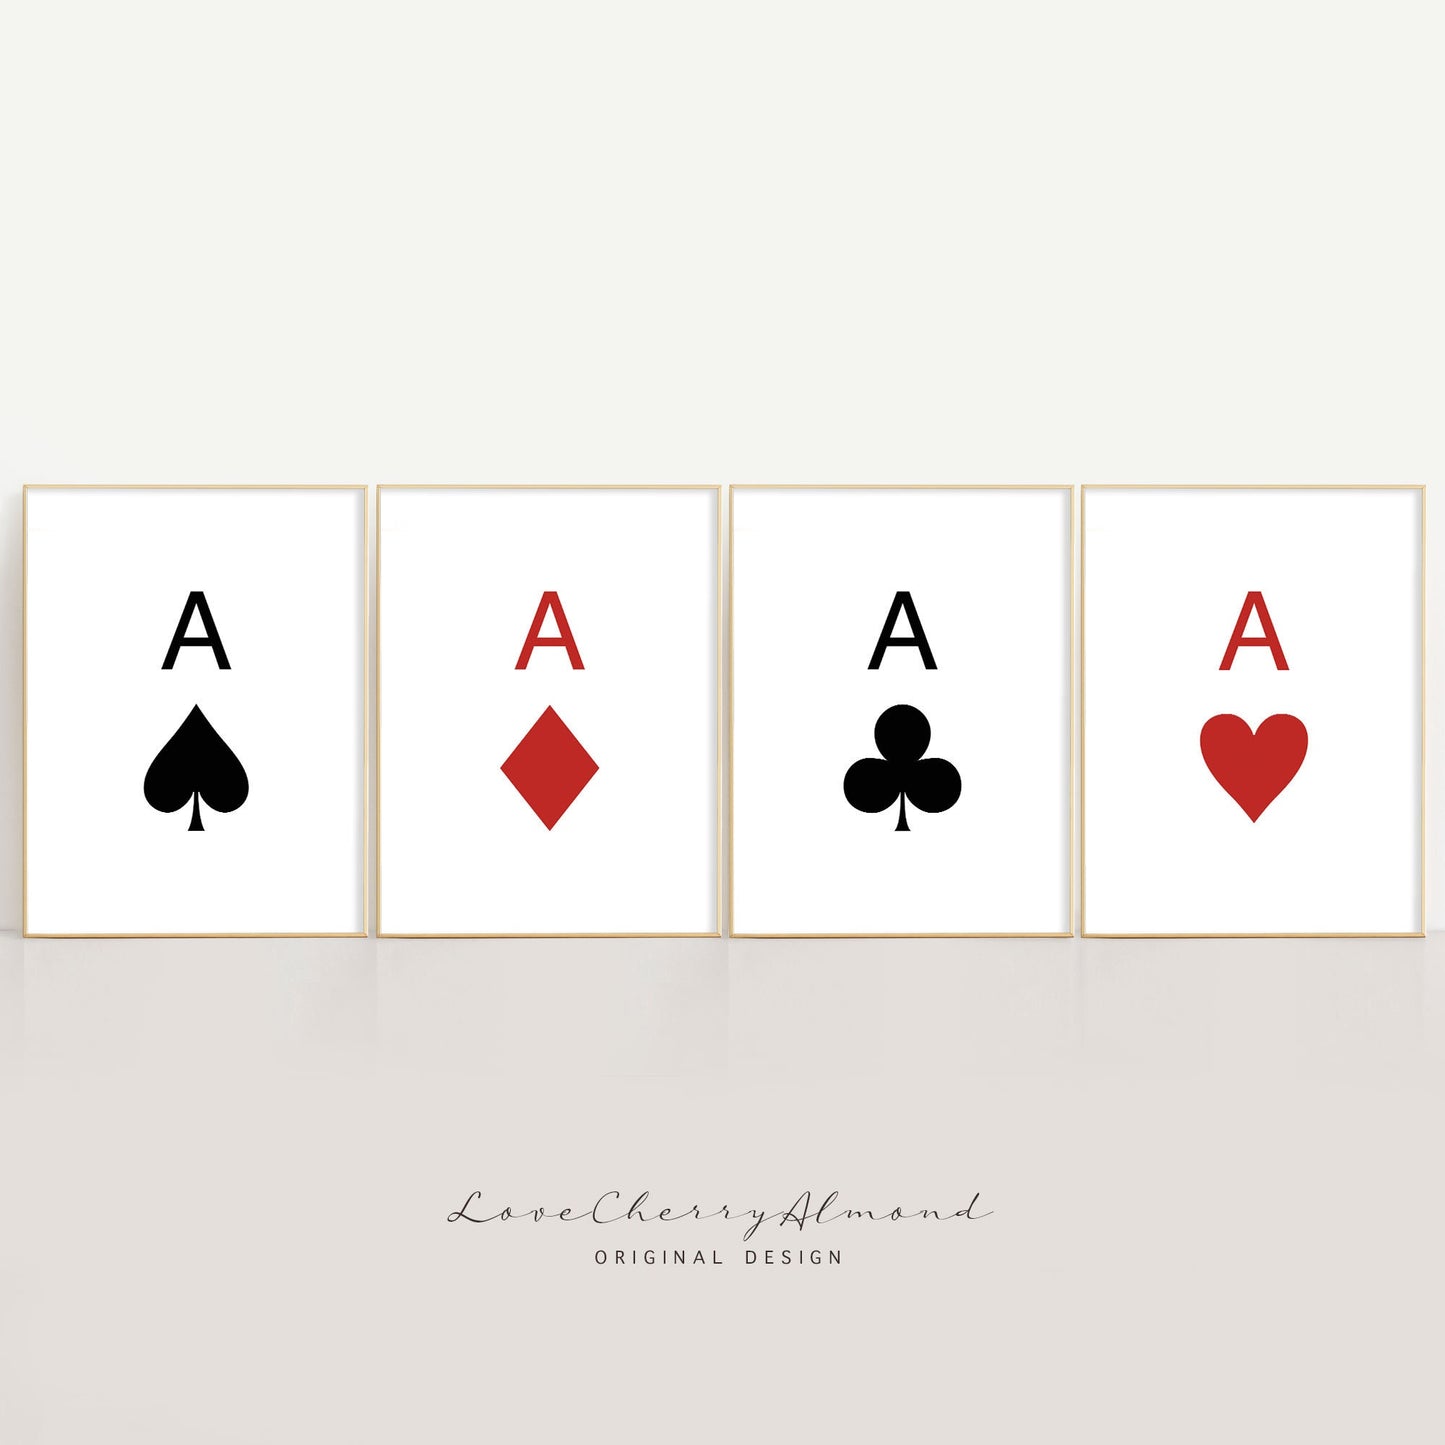 Asse der Spielkarten, Herz/Spaten/Klee/Diamant